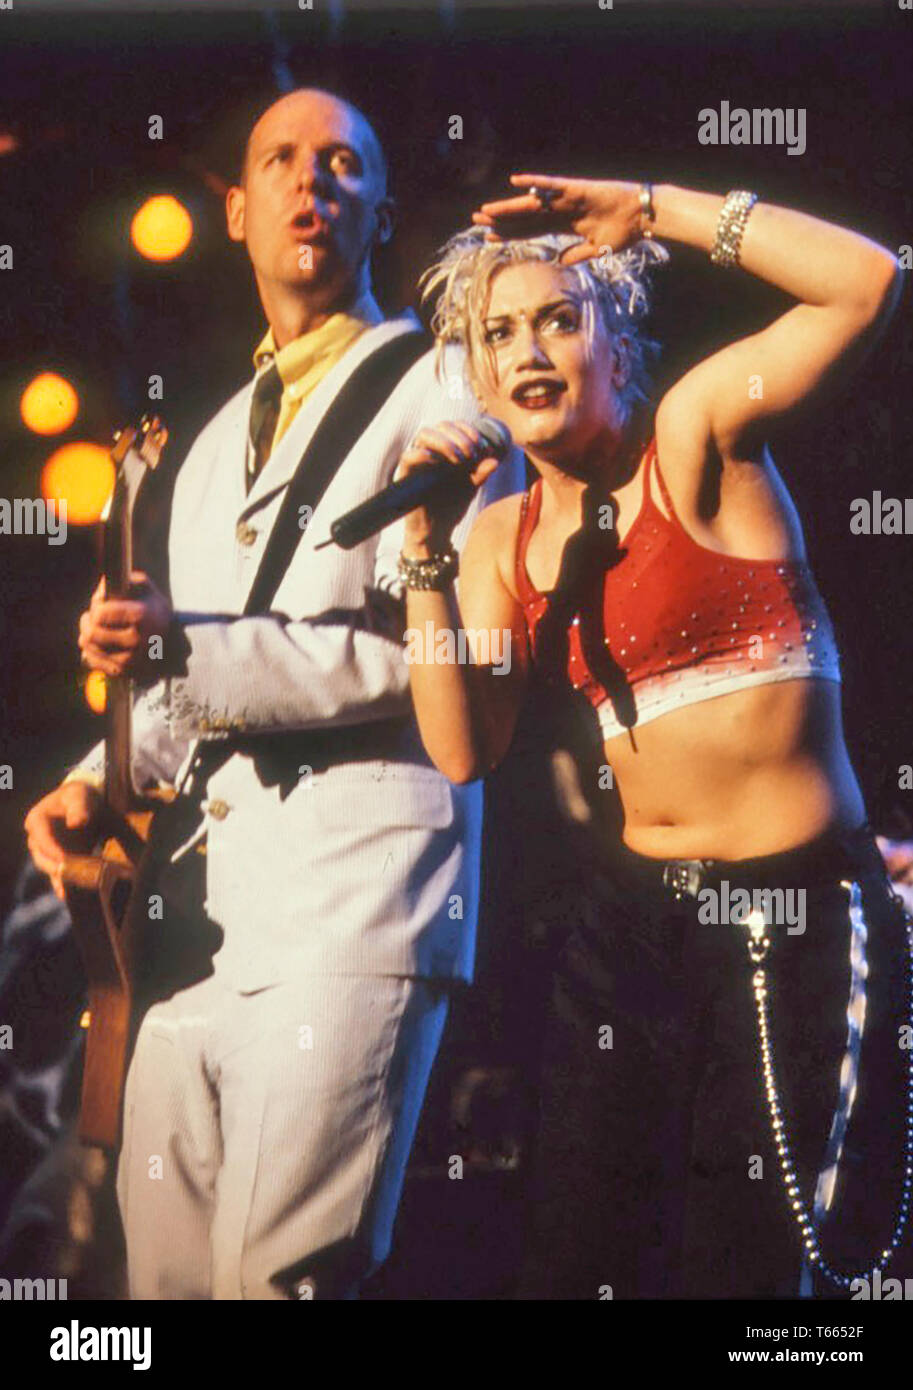 Pas de doute le groupe de rock américain avec Gwen Stefani en 1996 Banque D'Images